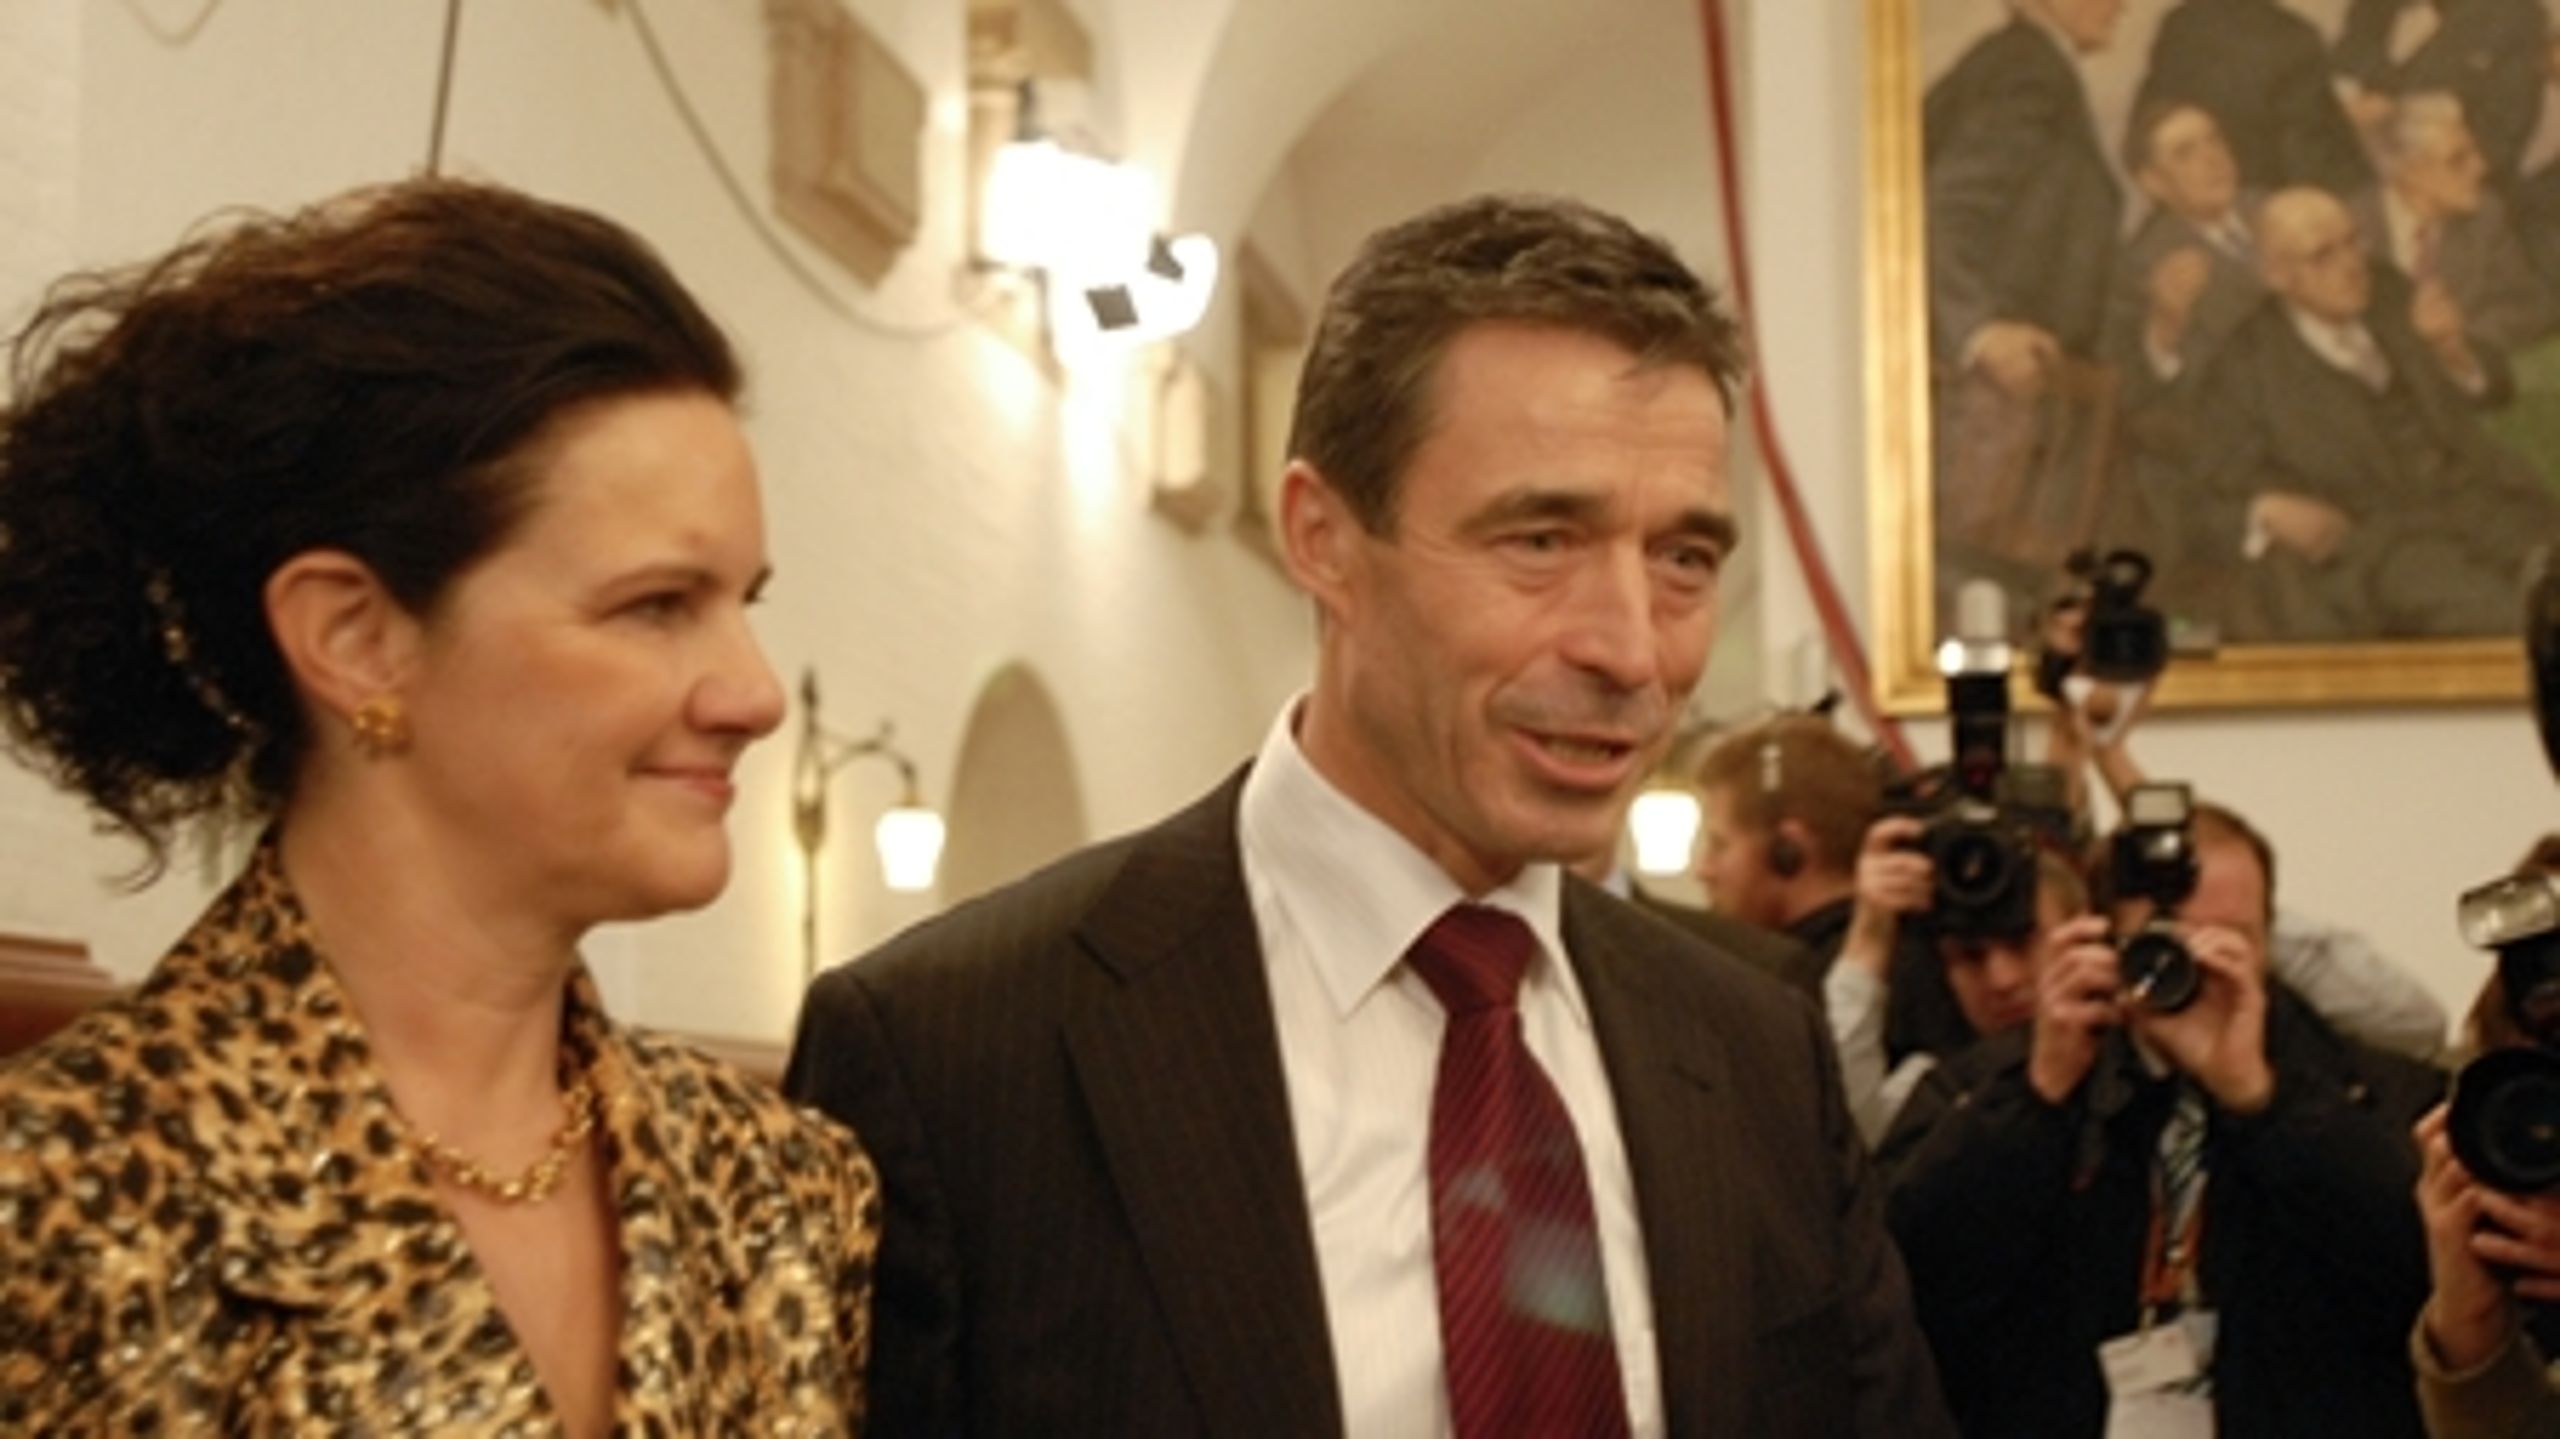 Venstres formand Anders Fogh Rasmussen  valgt for tredje gang til statsminister i november 2007 - kimen blev lagt allerede i midten af 80erne, konstaterer ny bog.